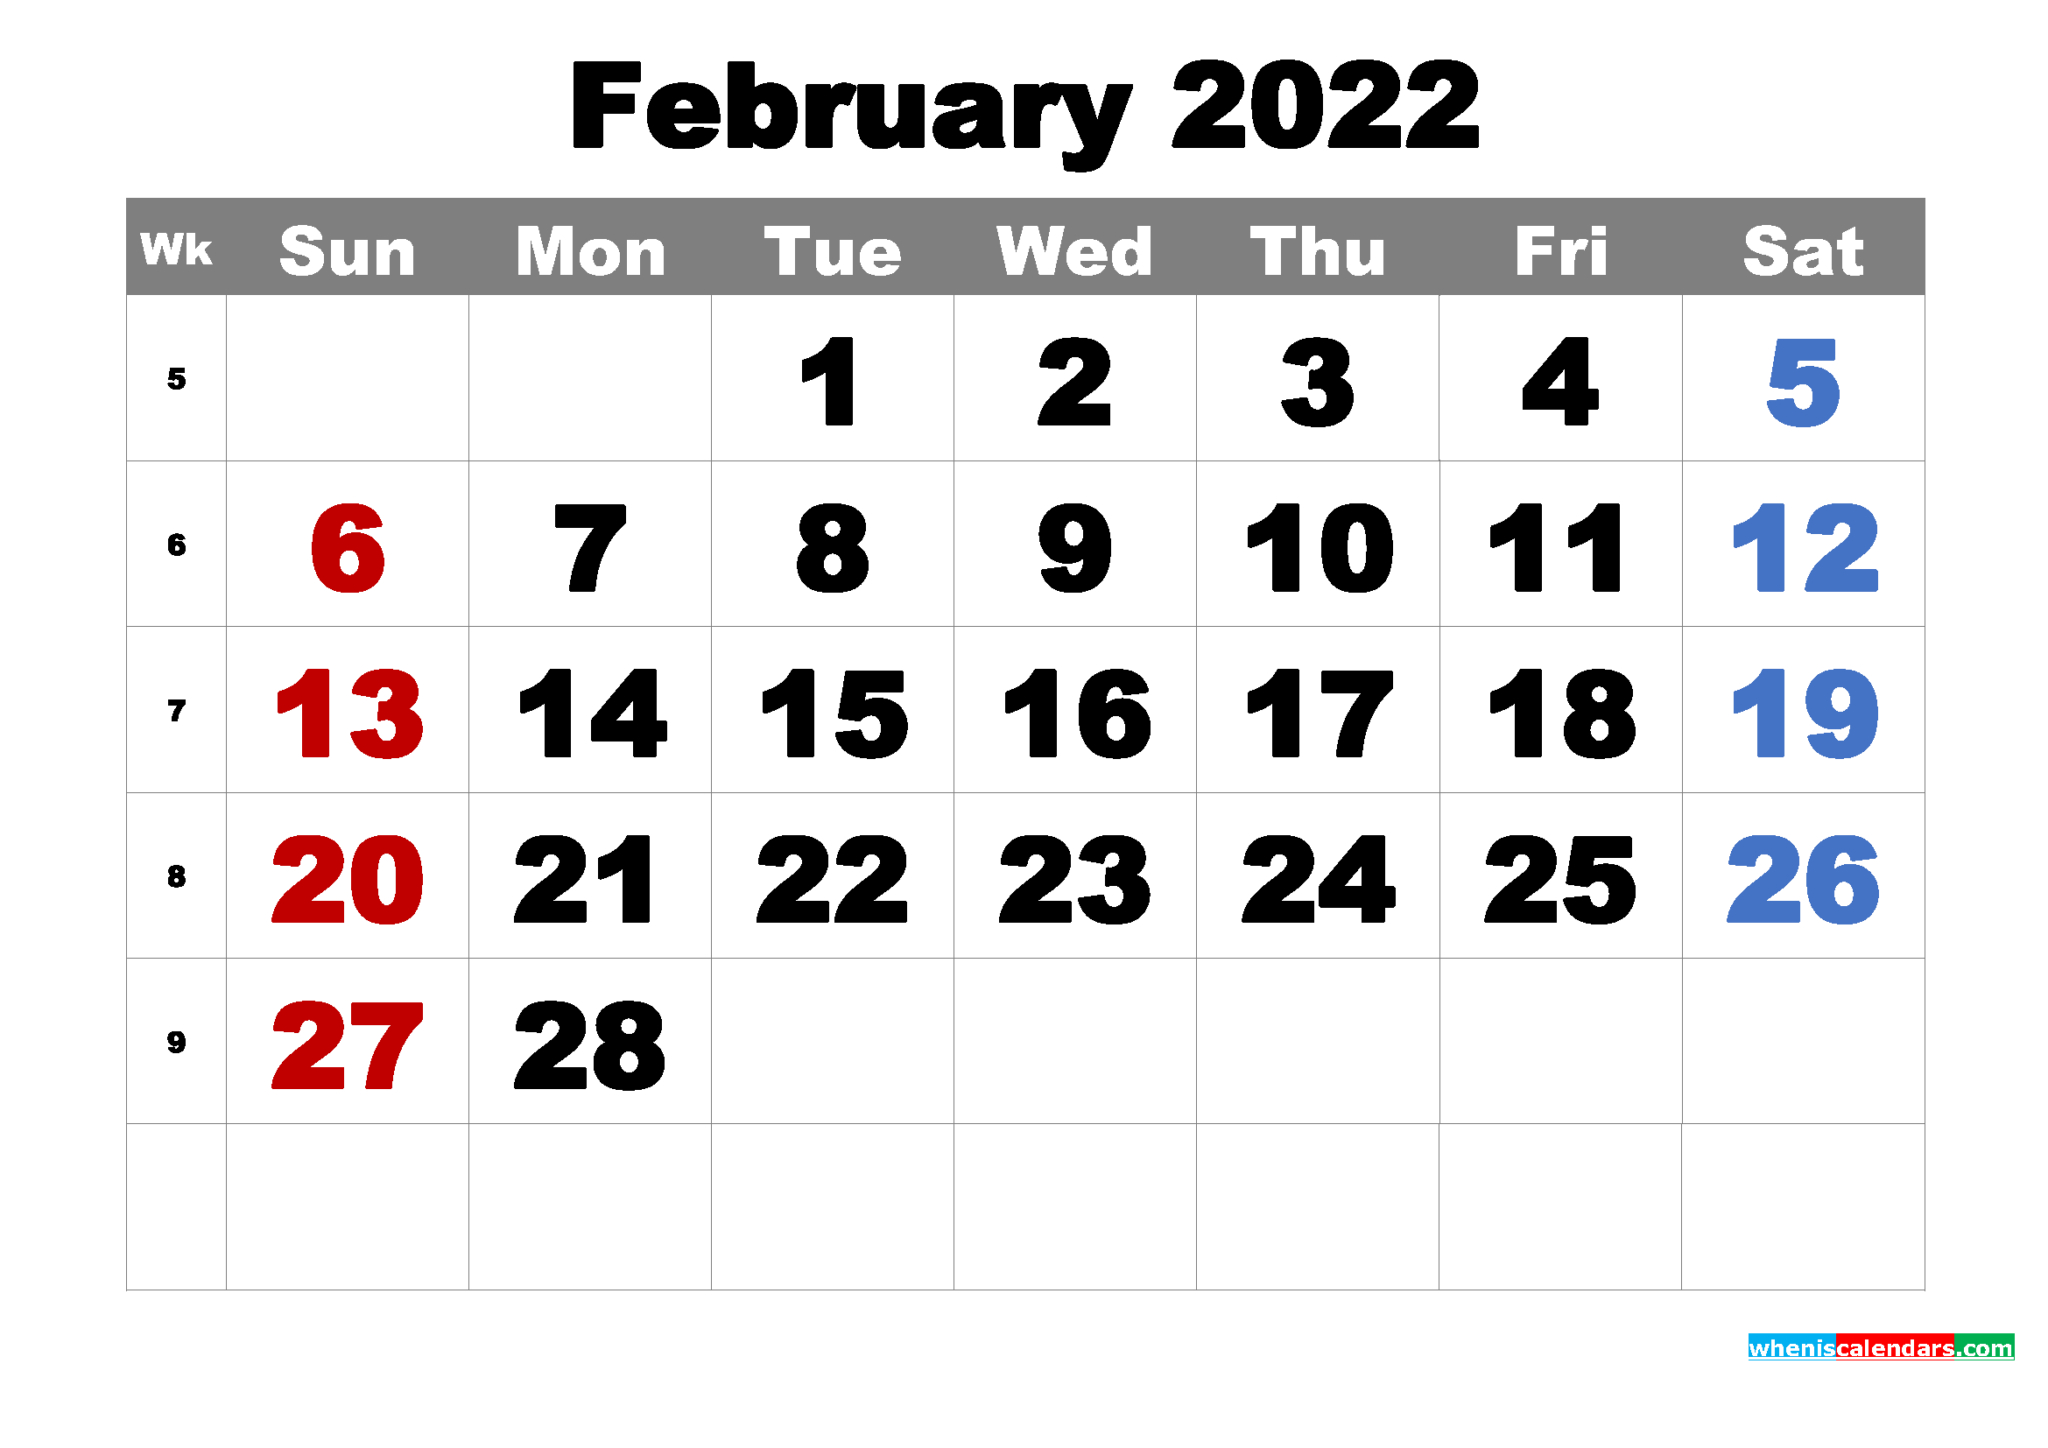 February 2022 Calendar Microsoft Word